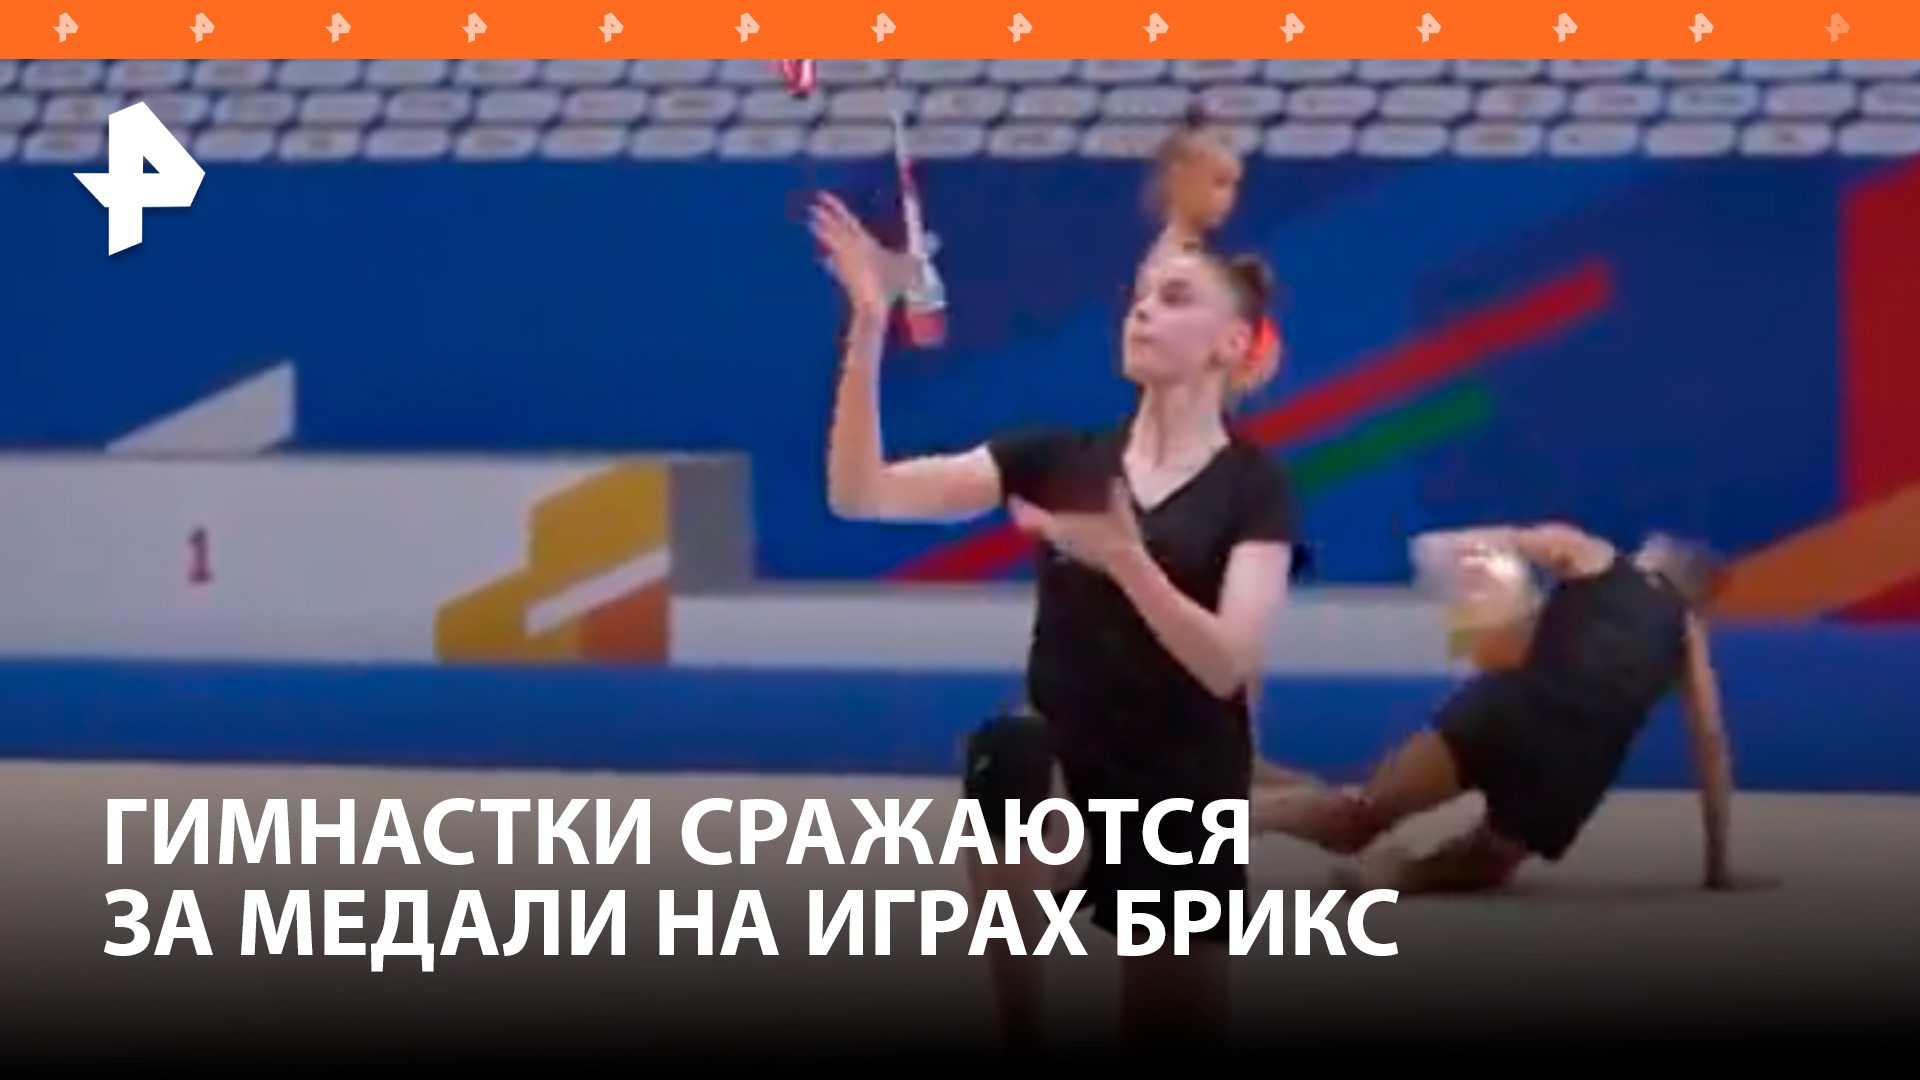 Более ста гимнасток борются за победу на Играх БРИКС в Казани / РЕН Новости